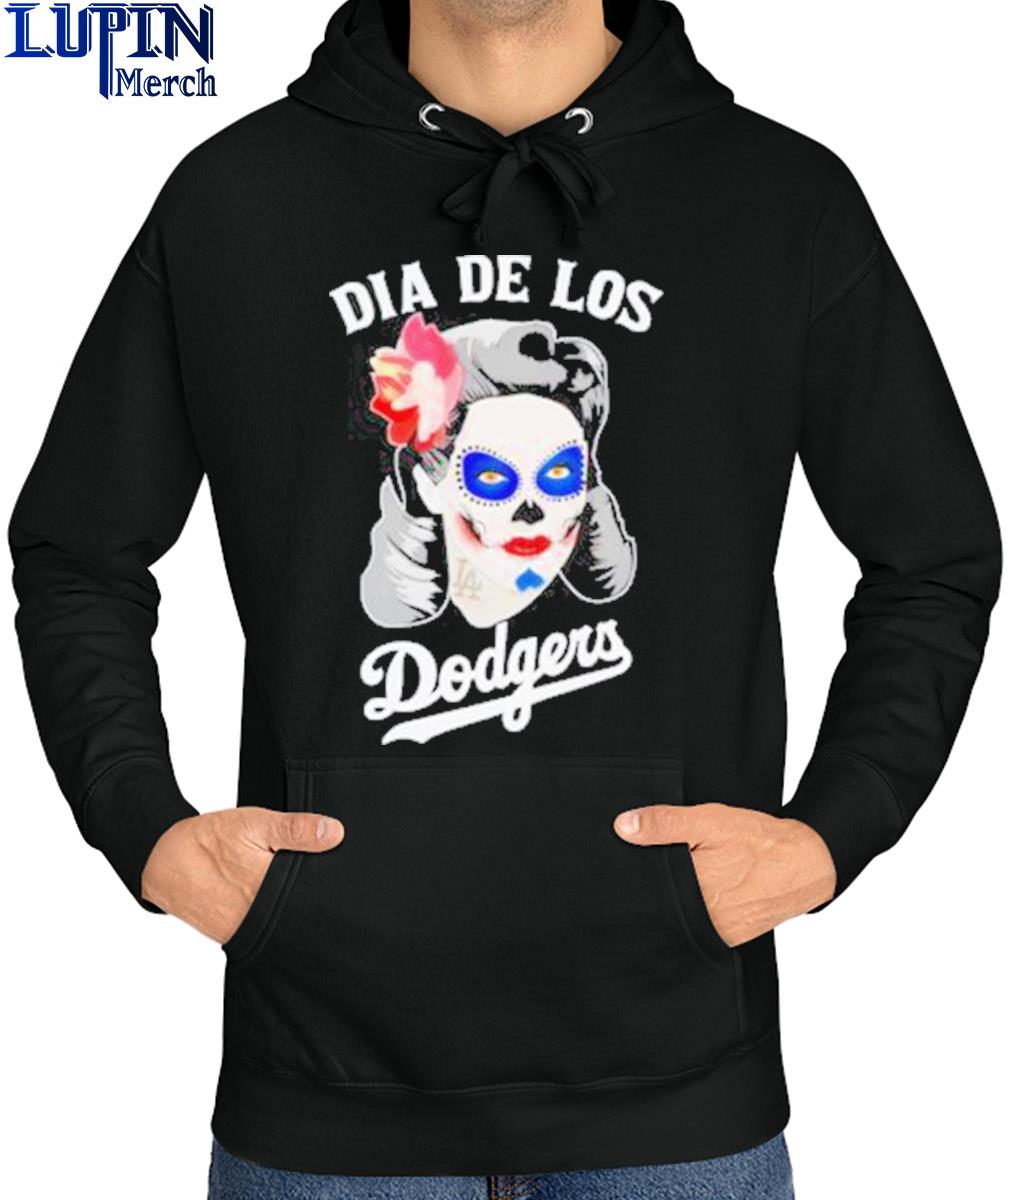 Womens Dia De Los Dodgers Shirt 